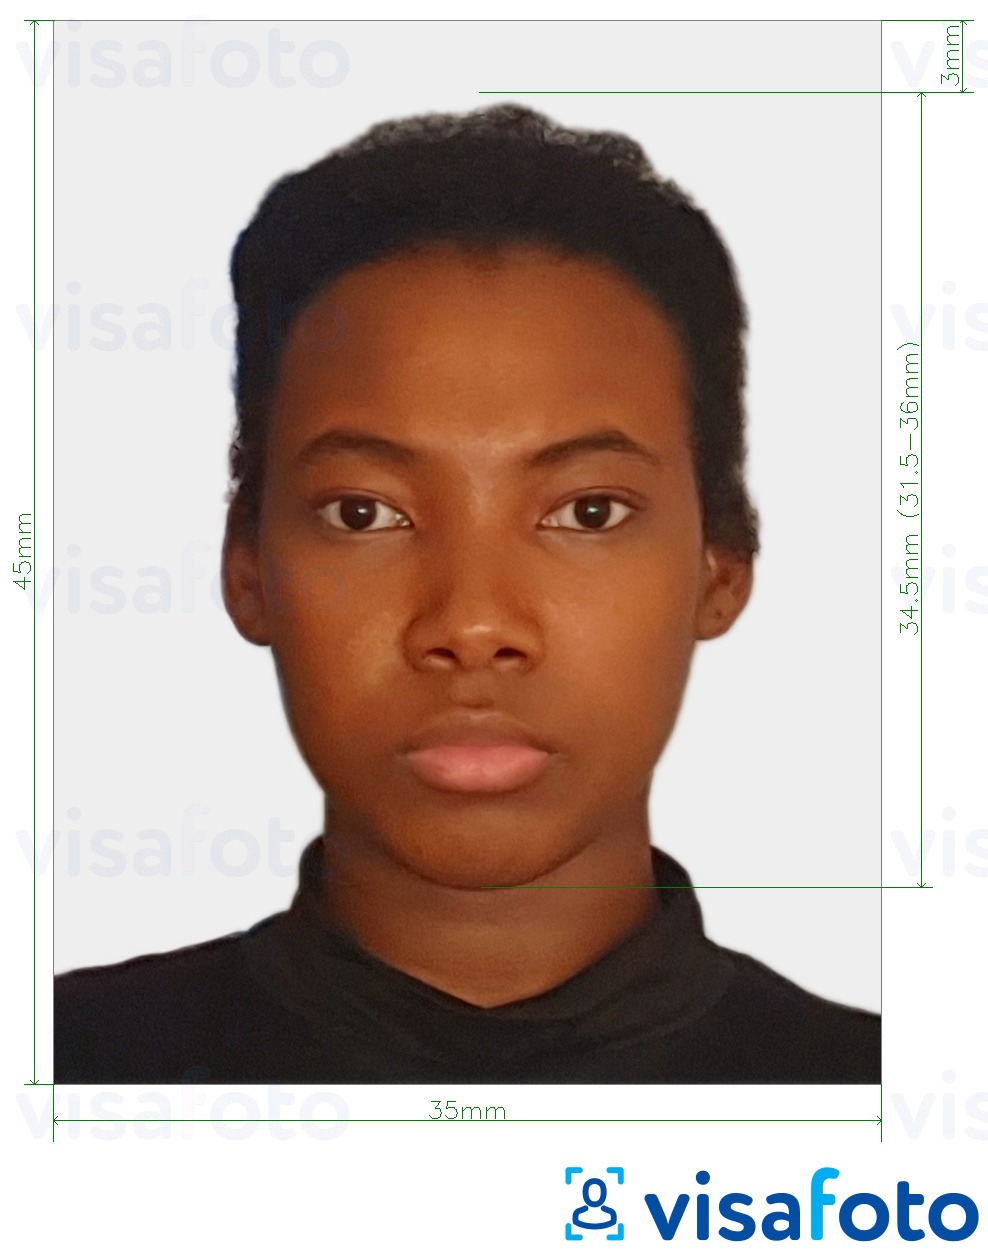 Exemples sur des photos pour Gabon evisa photo 35x45 mm (3.5x4.5 cm) avec les spécifications de taille exactes